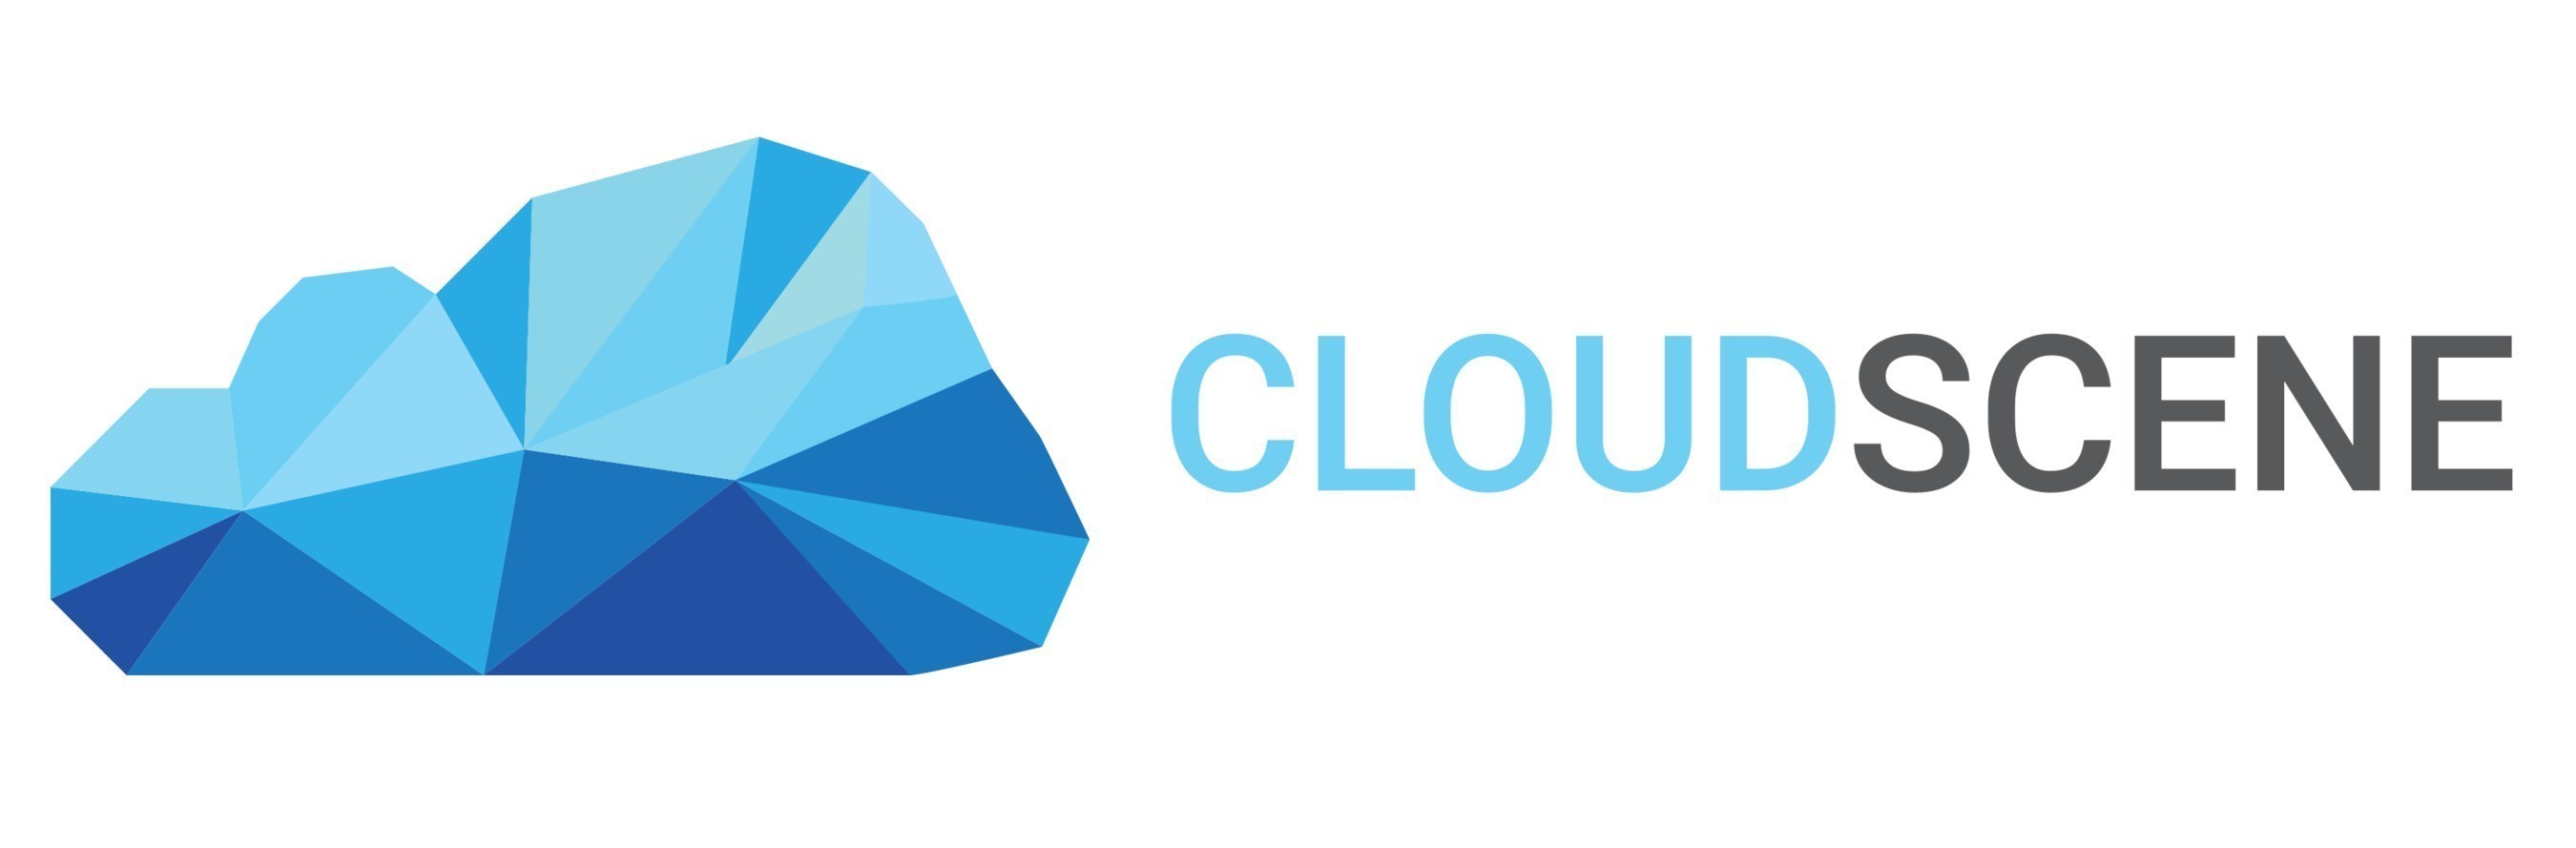 Cloudscene logo